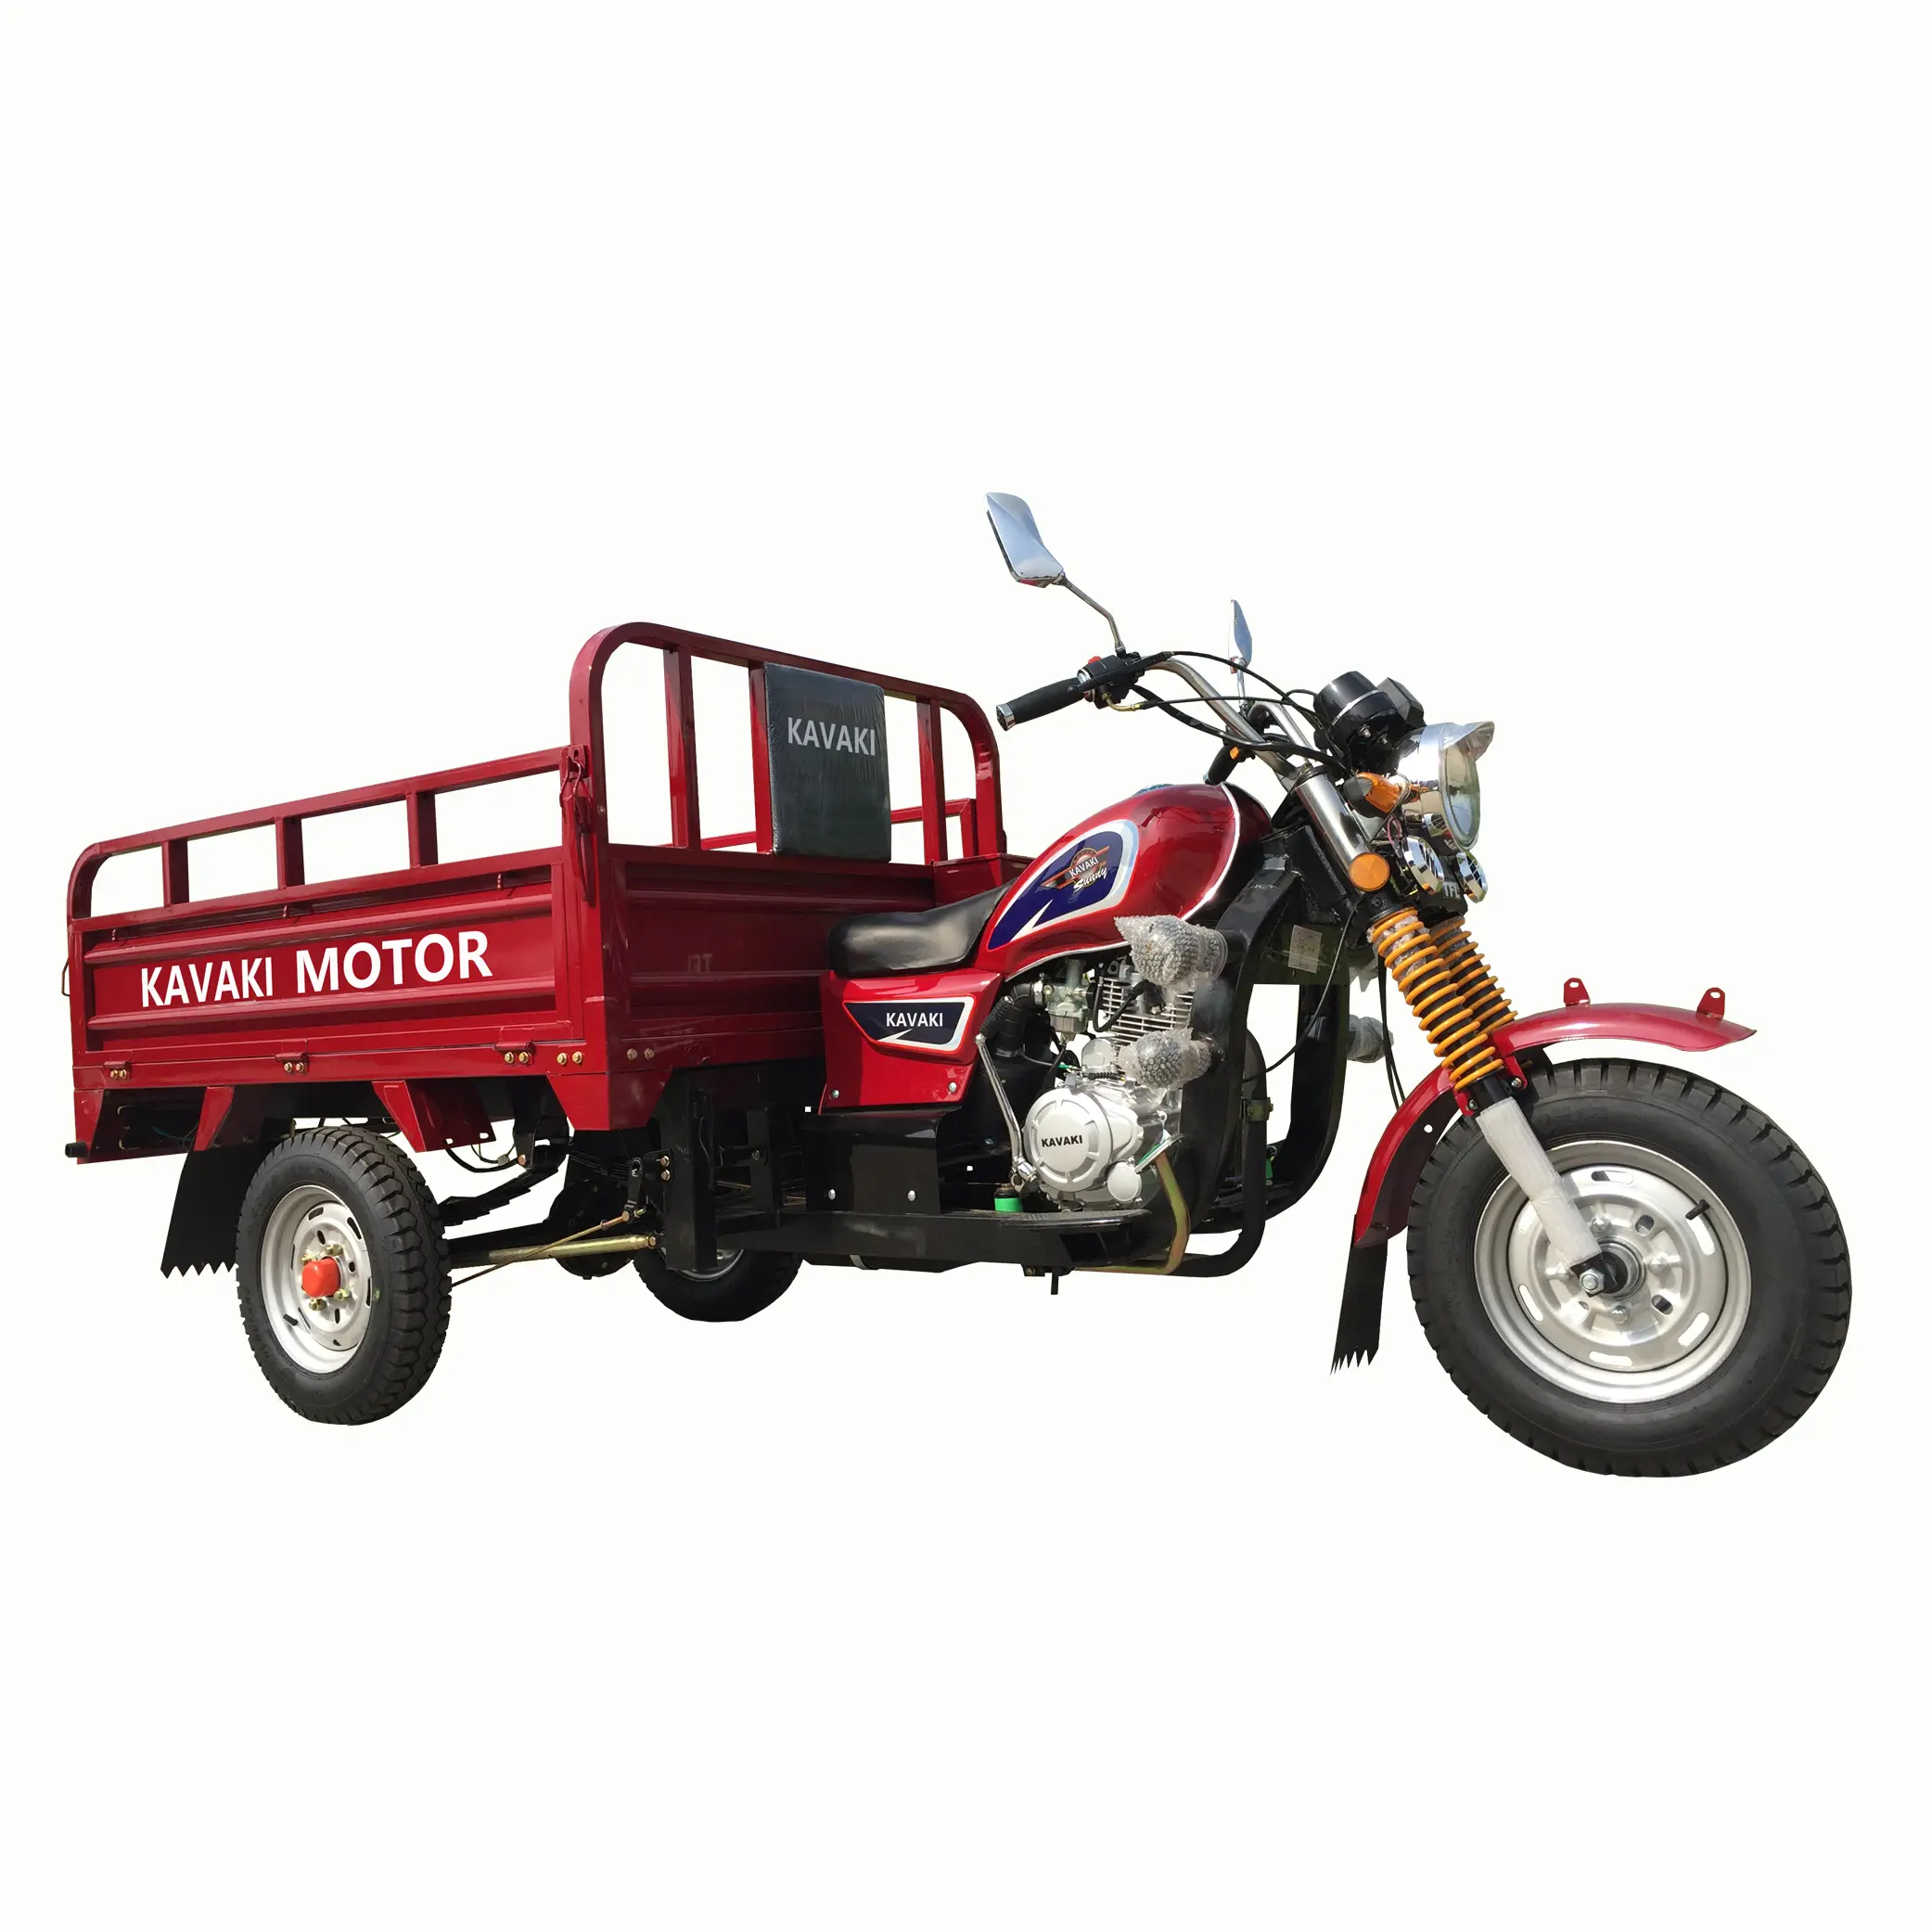 Fabbrica della cina kavaki 150cc 200cc triciclo raffreddato ad aria motore a benzina tre ruote scooter cargo tricicli produttori